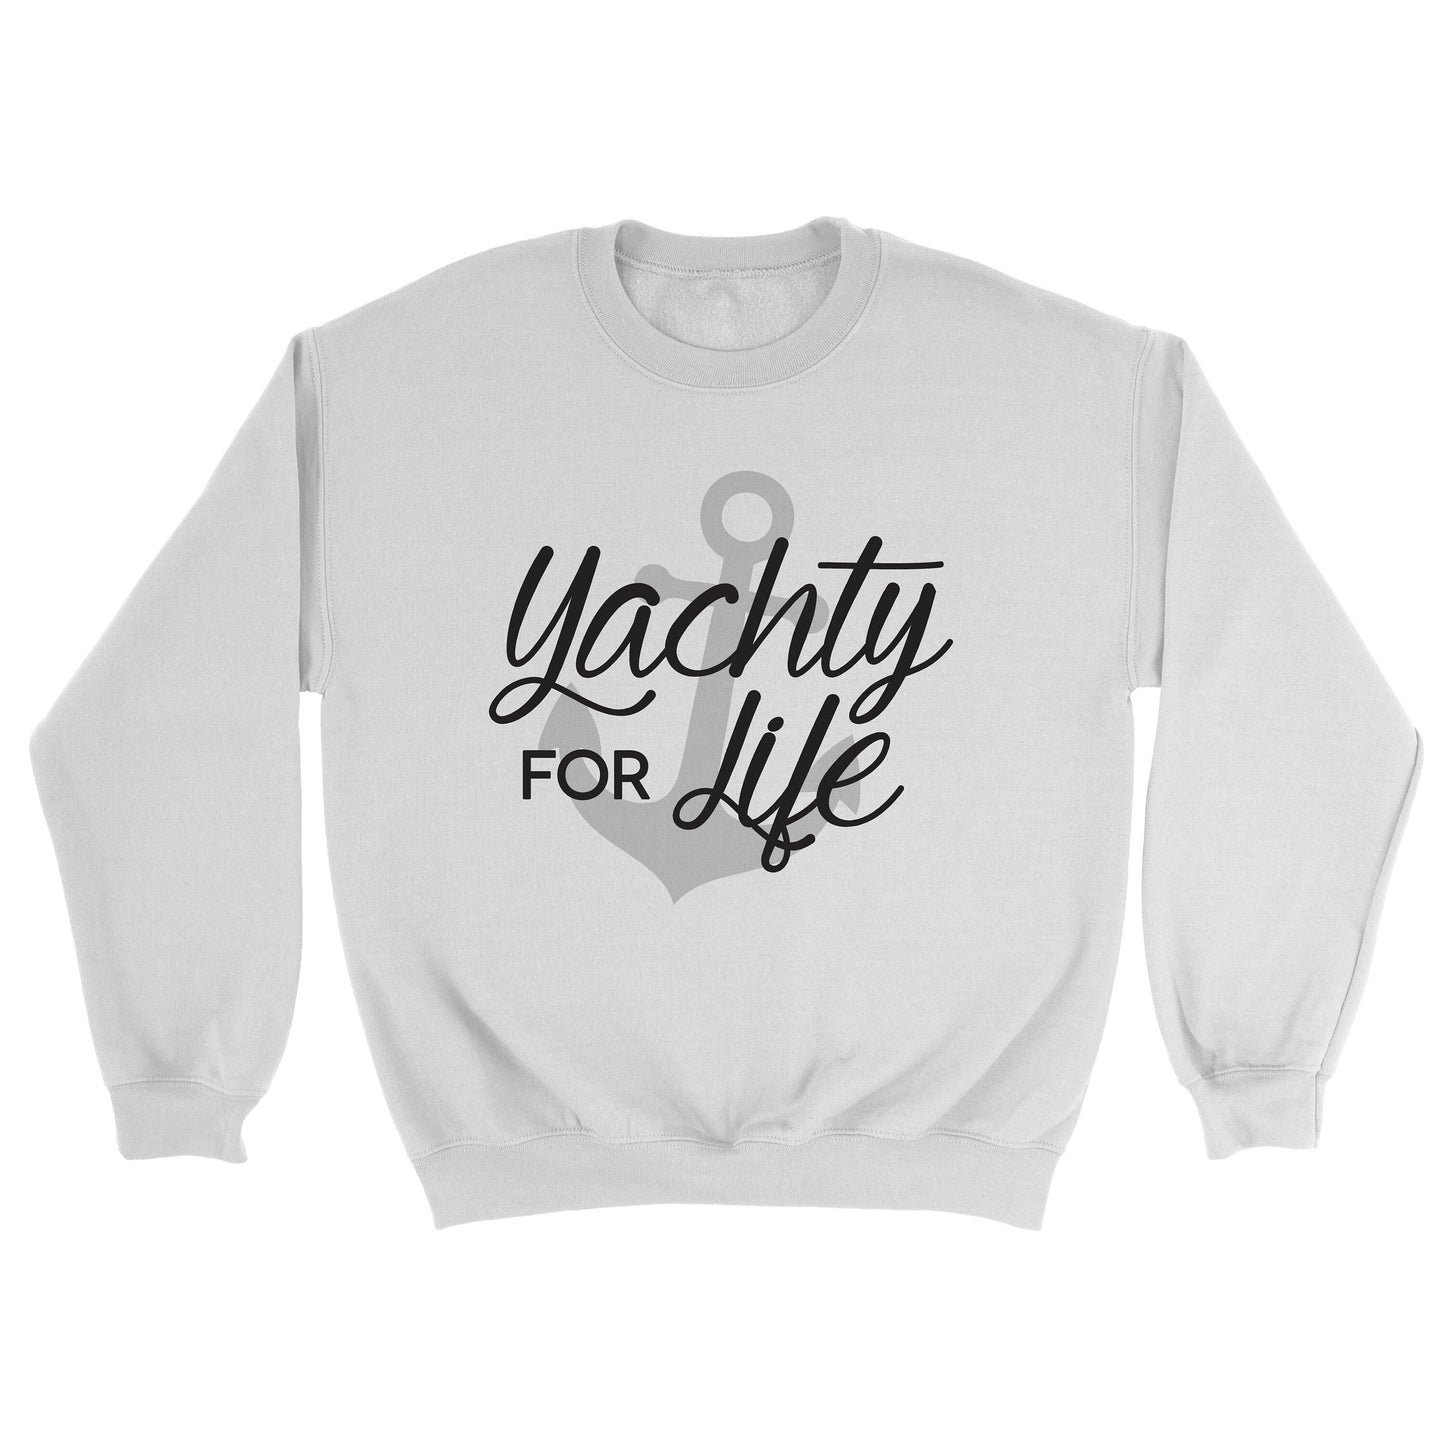 Yachty for Life Crewneck Sweatshirt